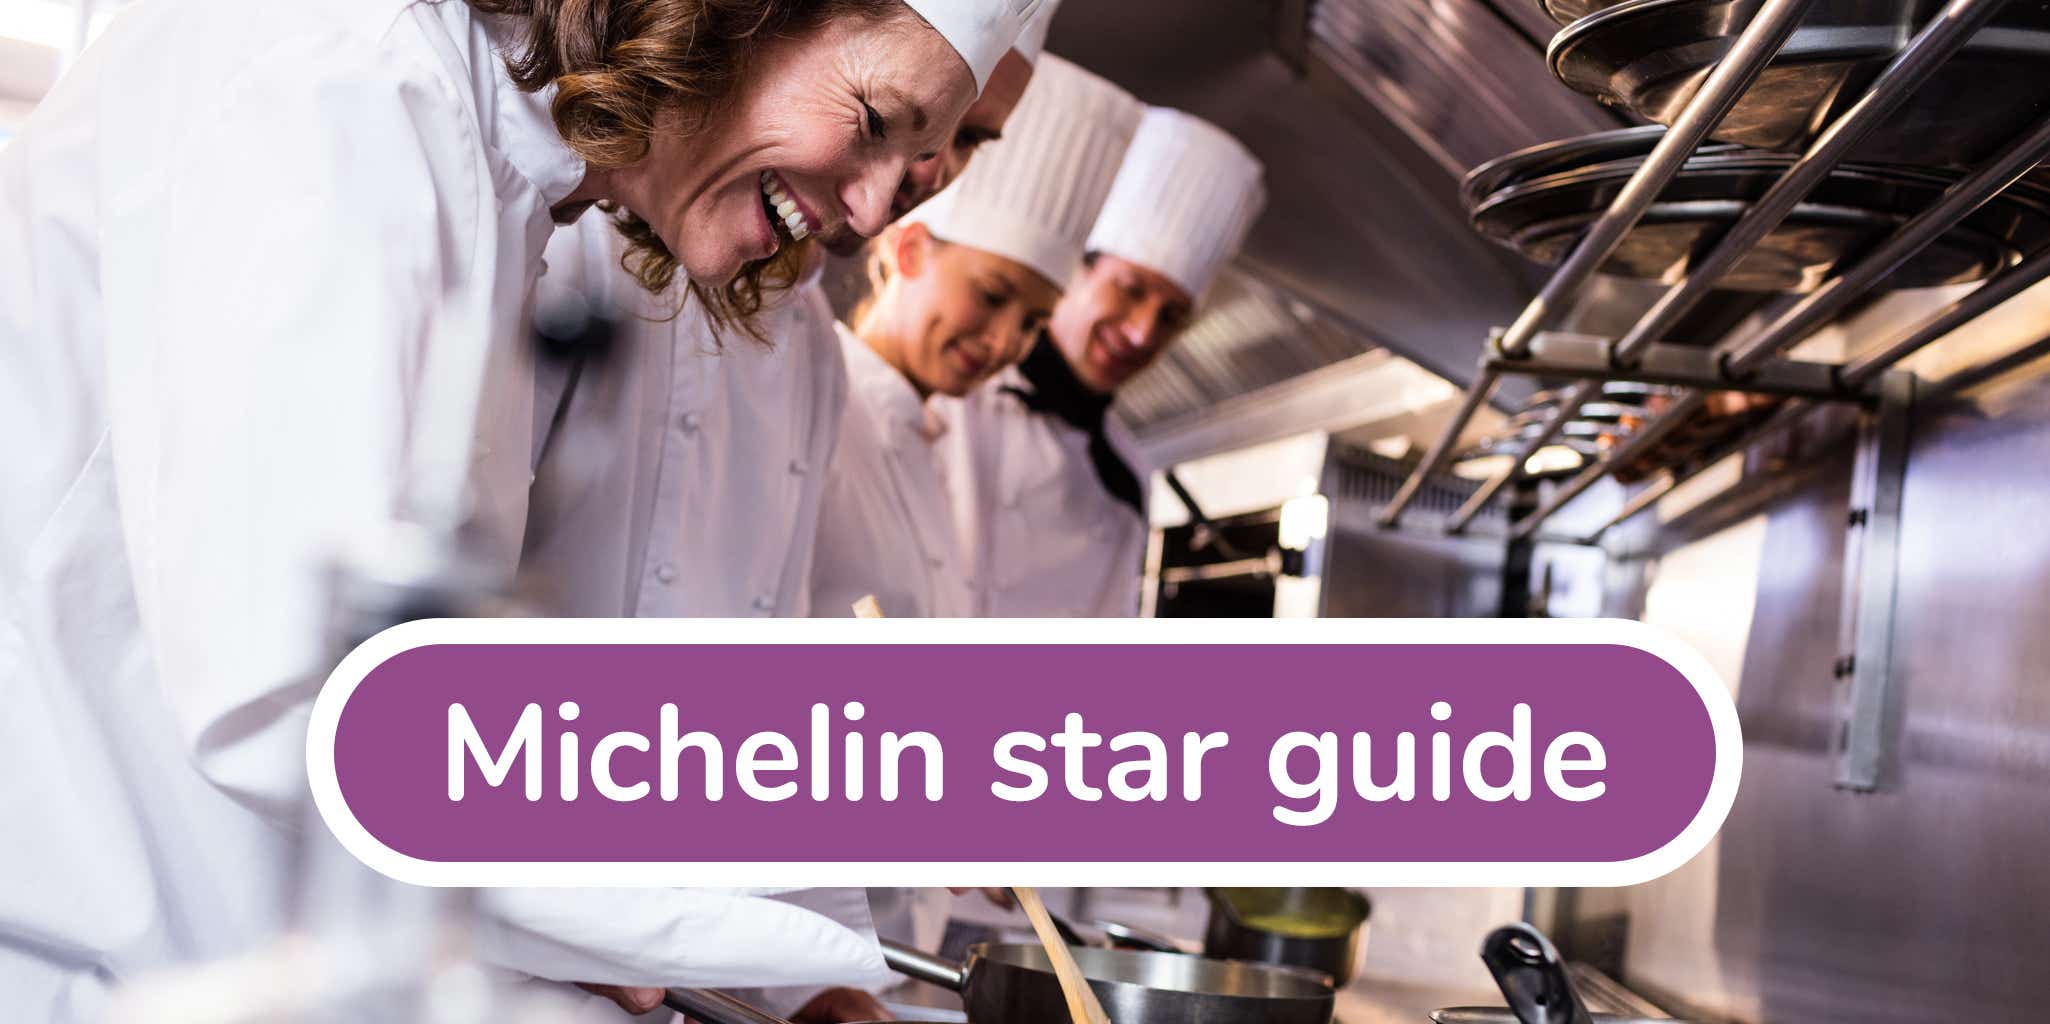 Michelin star guide - Image module